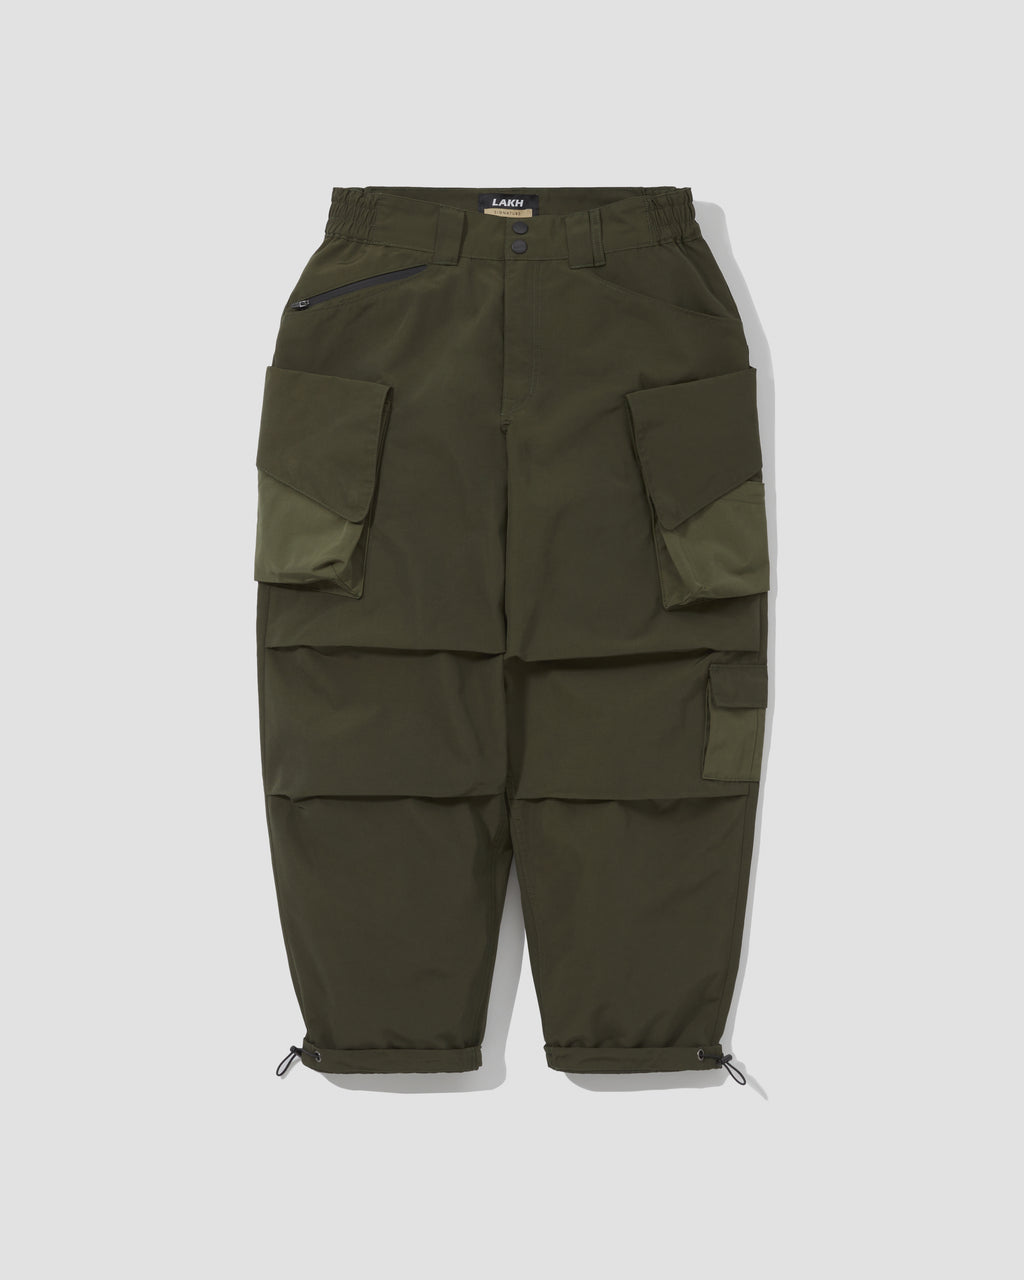 Slanted Pockets Cargo Pants - Nylon Olive